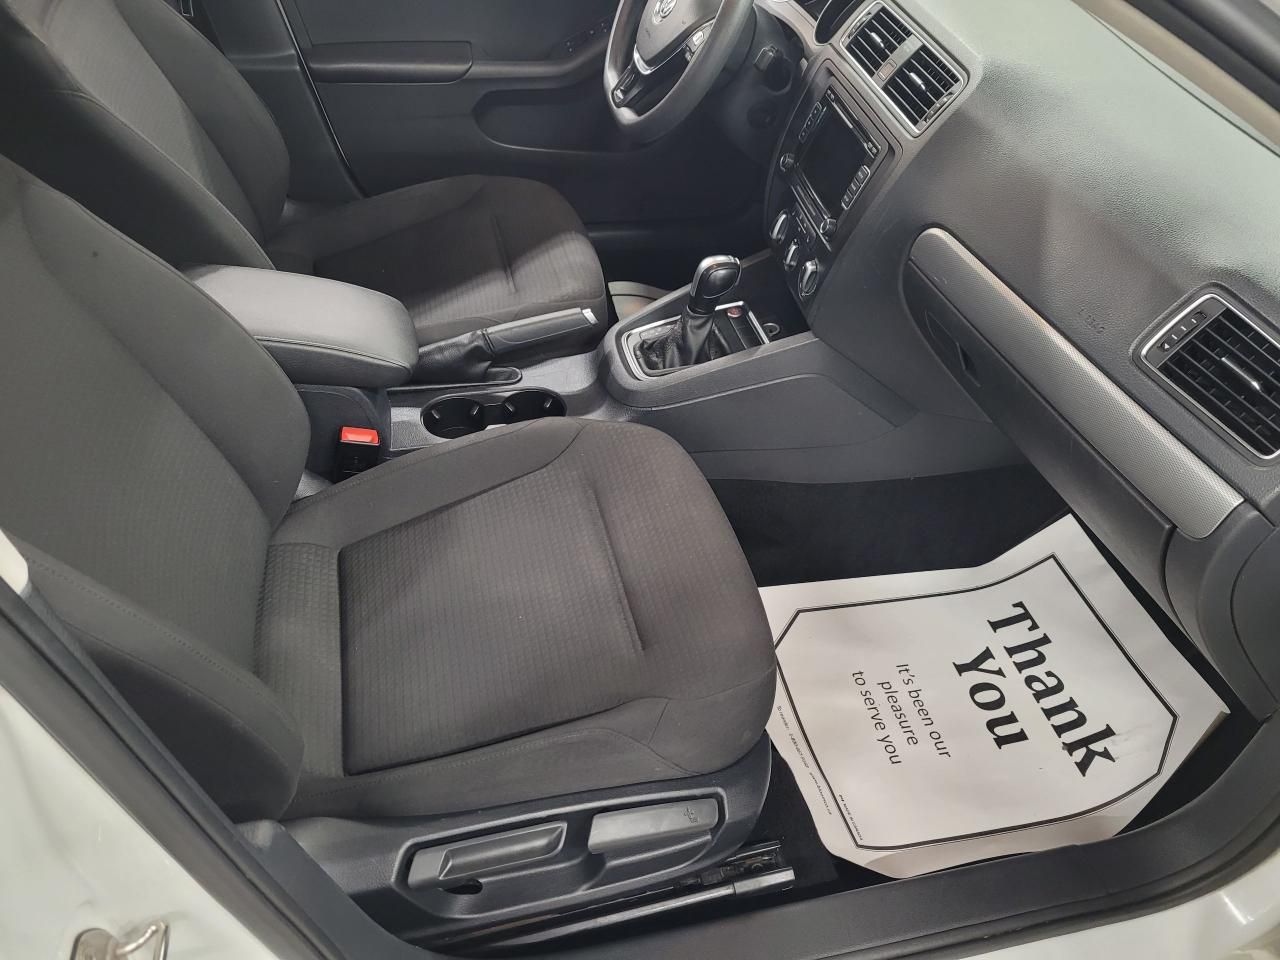 2015 Volkswagen Jetta comfortline